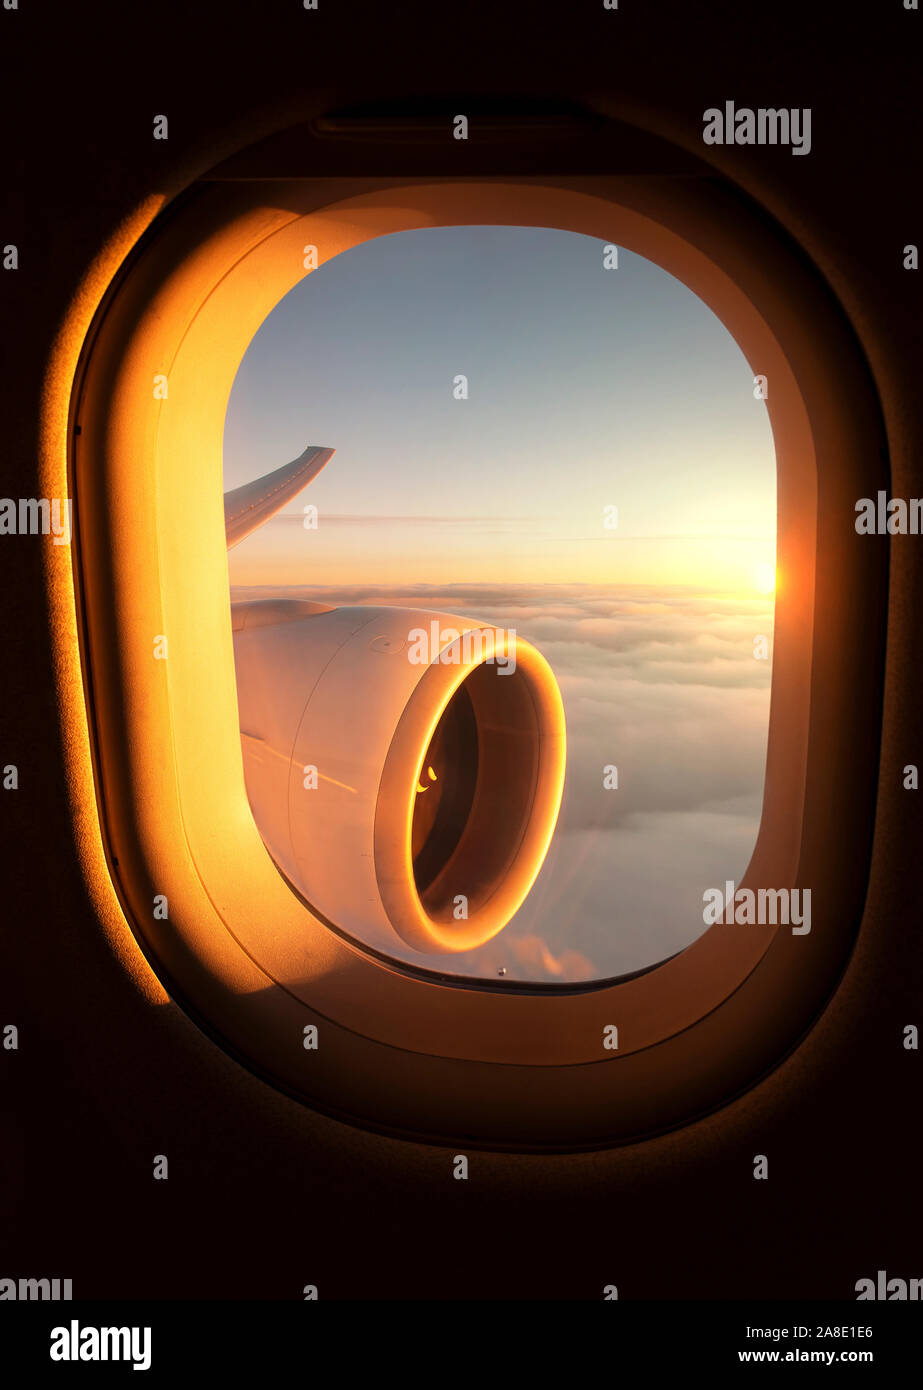 Magnifique coucher de soleil vu à travers une fenêtre de l'avion avec le moteur et l'aile de l'avion à réaction visible. Banque D'Images